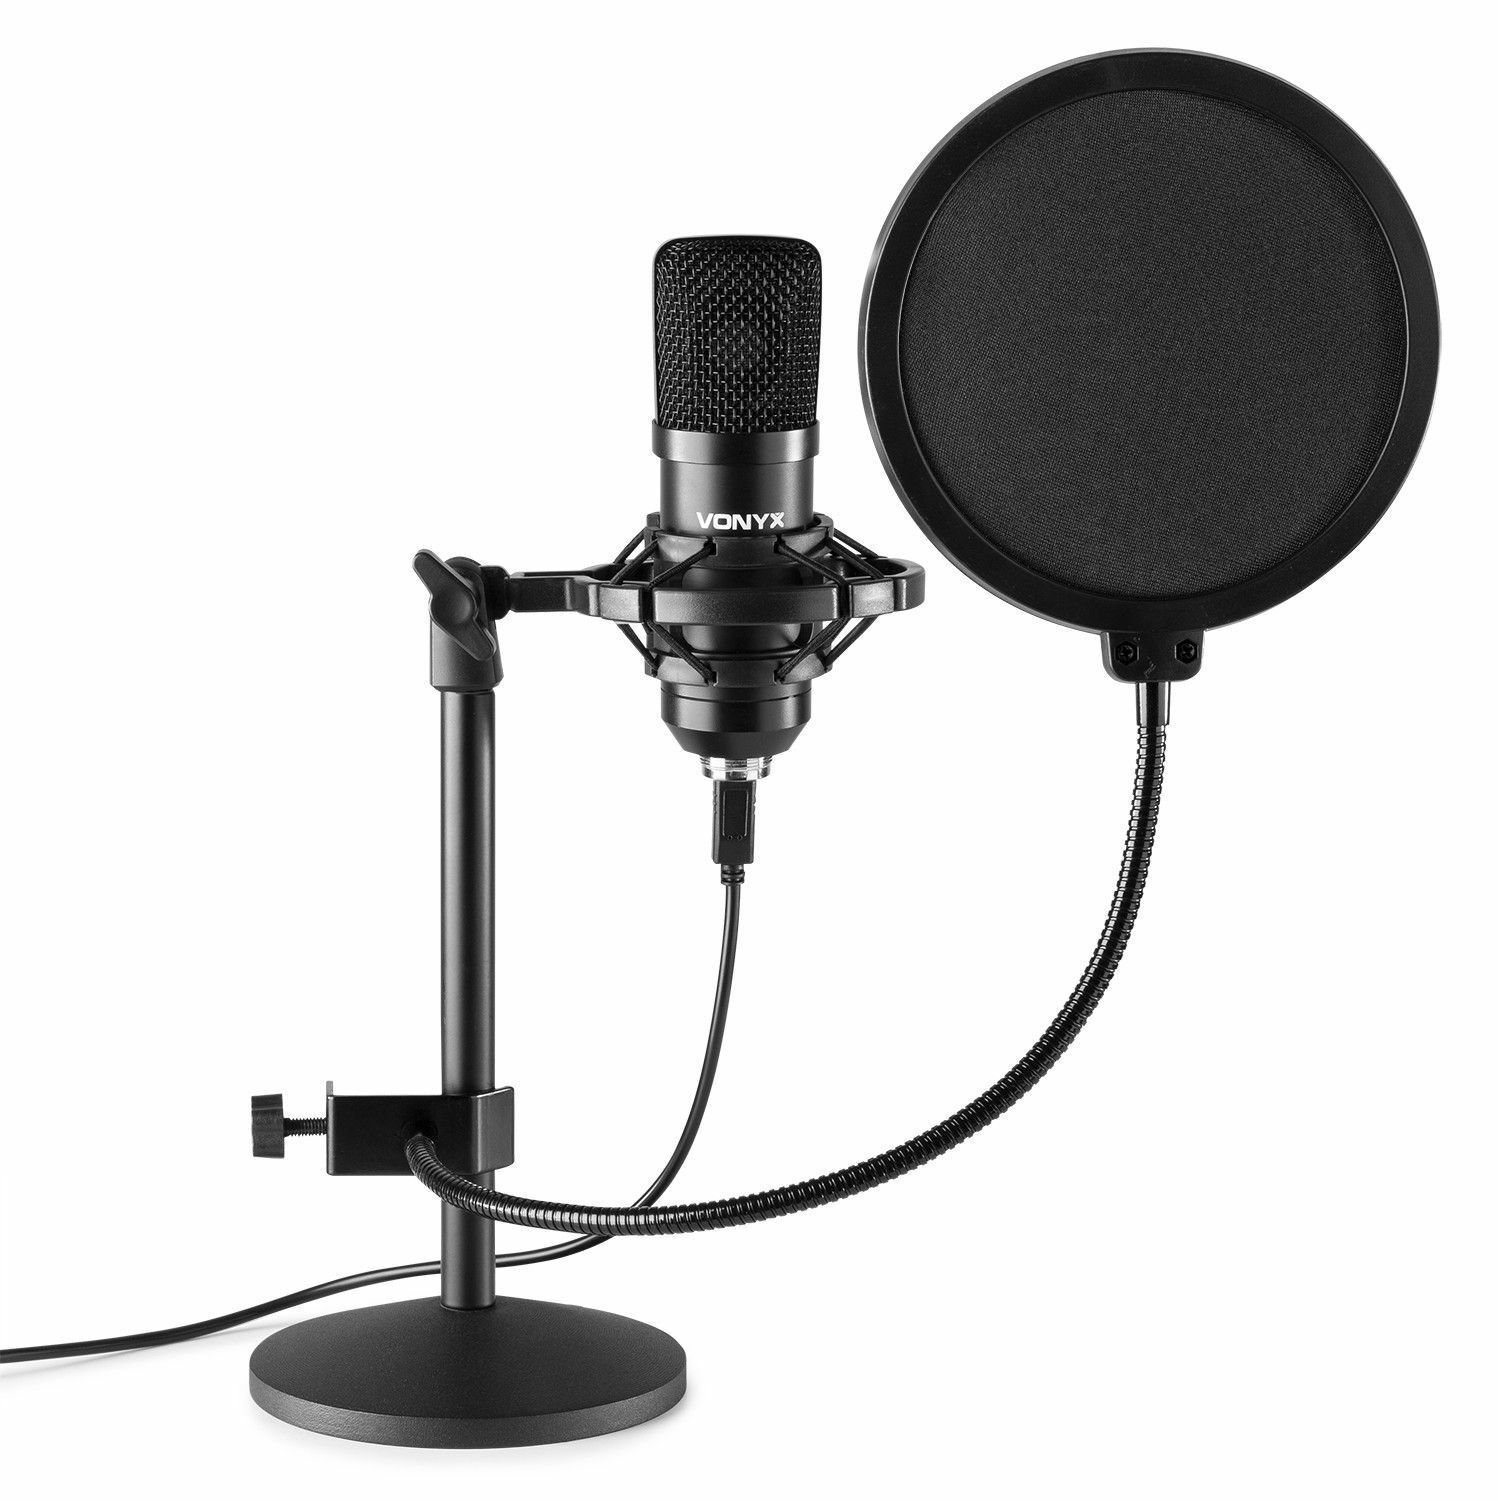 Knipperen Vul in afstand Vonyx CMTS300 USB Studio microfoon met tafelstandaard - Zwart kopen?